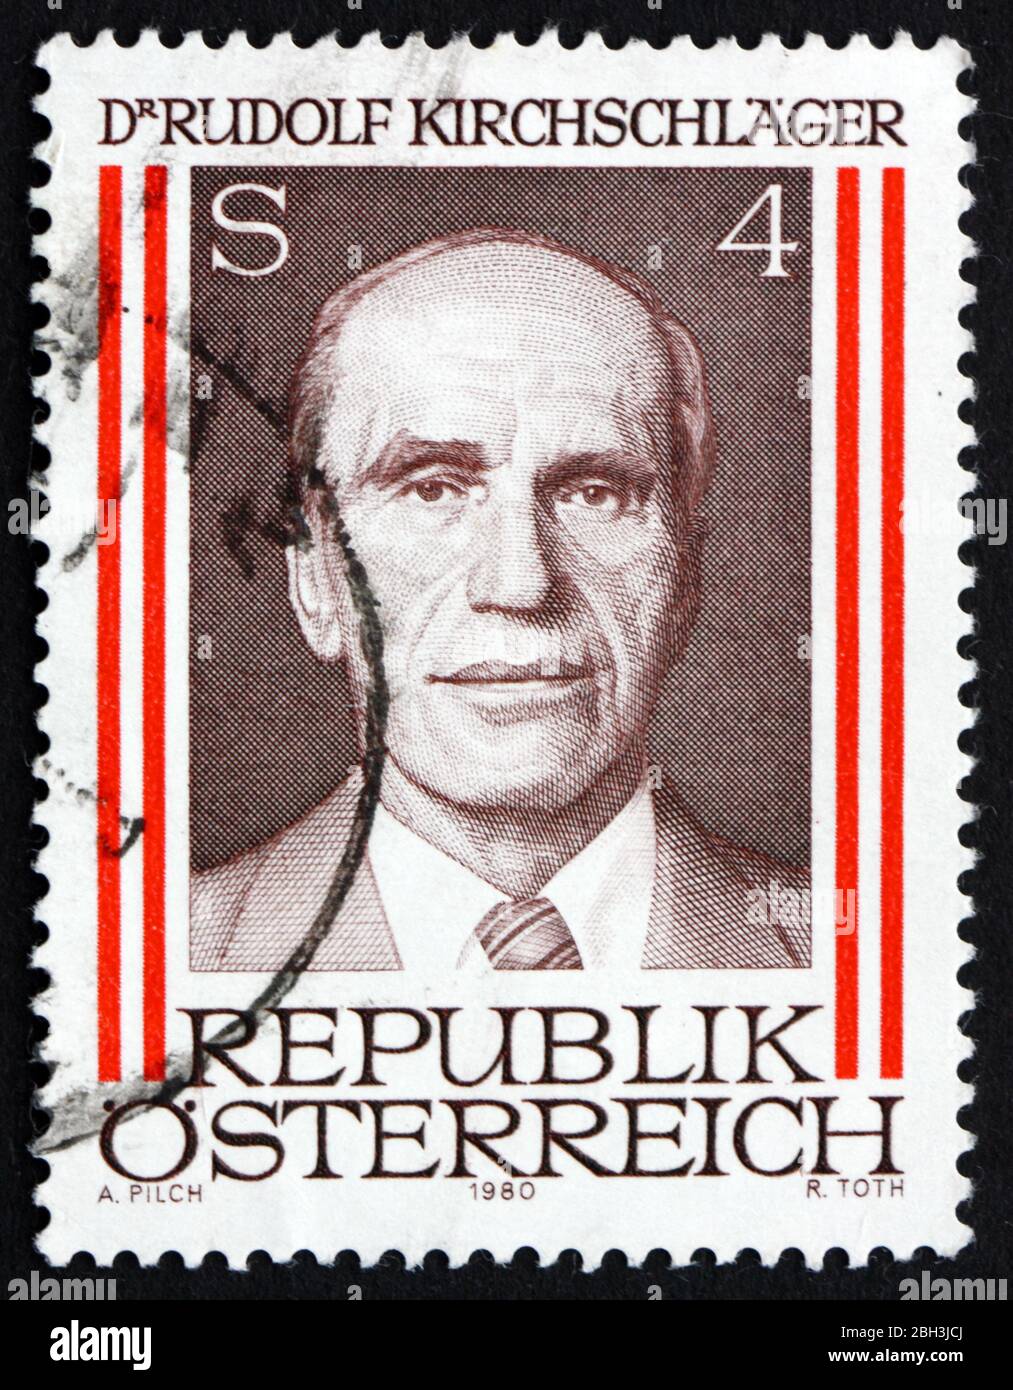 ÖSTERREICH - UM 1980: Eine in Österreich gedruckte Briefmarke zeigt Rudolph Kirchschlager, 8. Präsident von Österreich, um 1980 Stockfoto